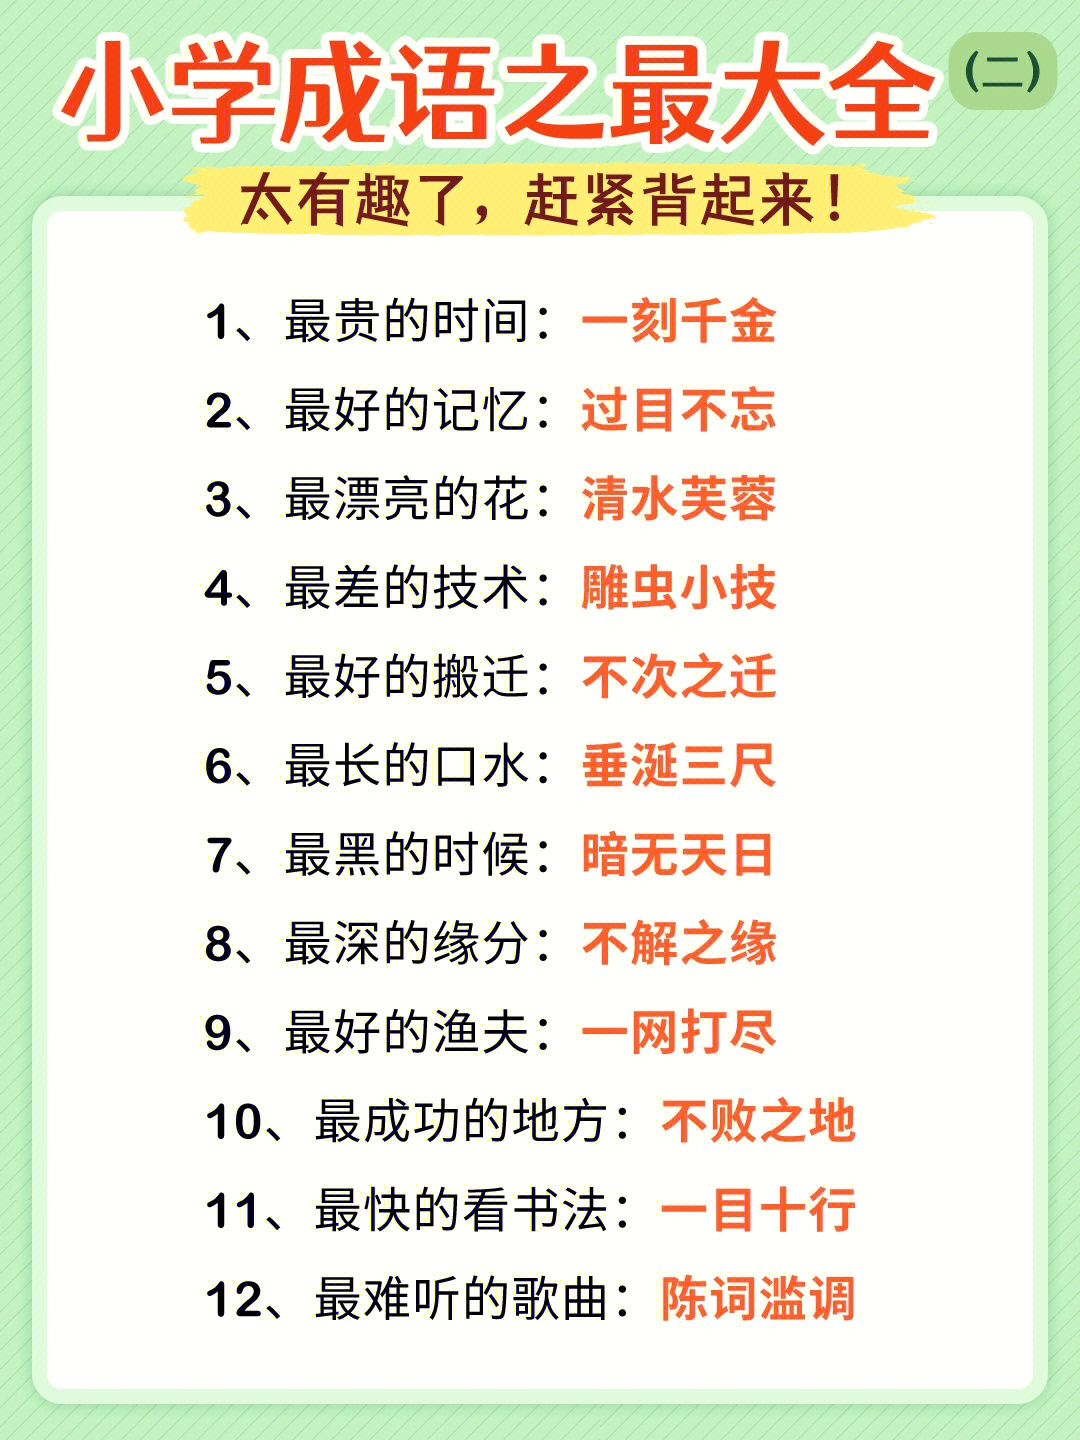 94成语是中华民族的优秀语言文化,是汉语中最精炼的语言